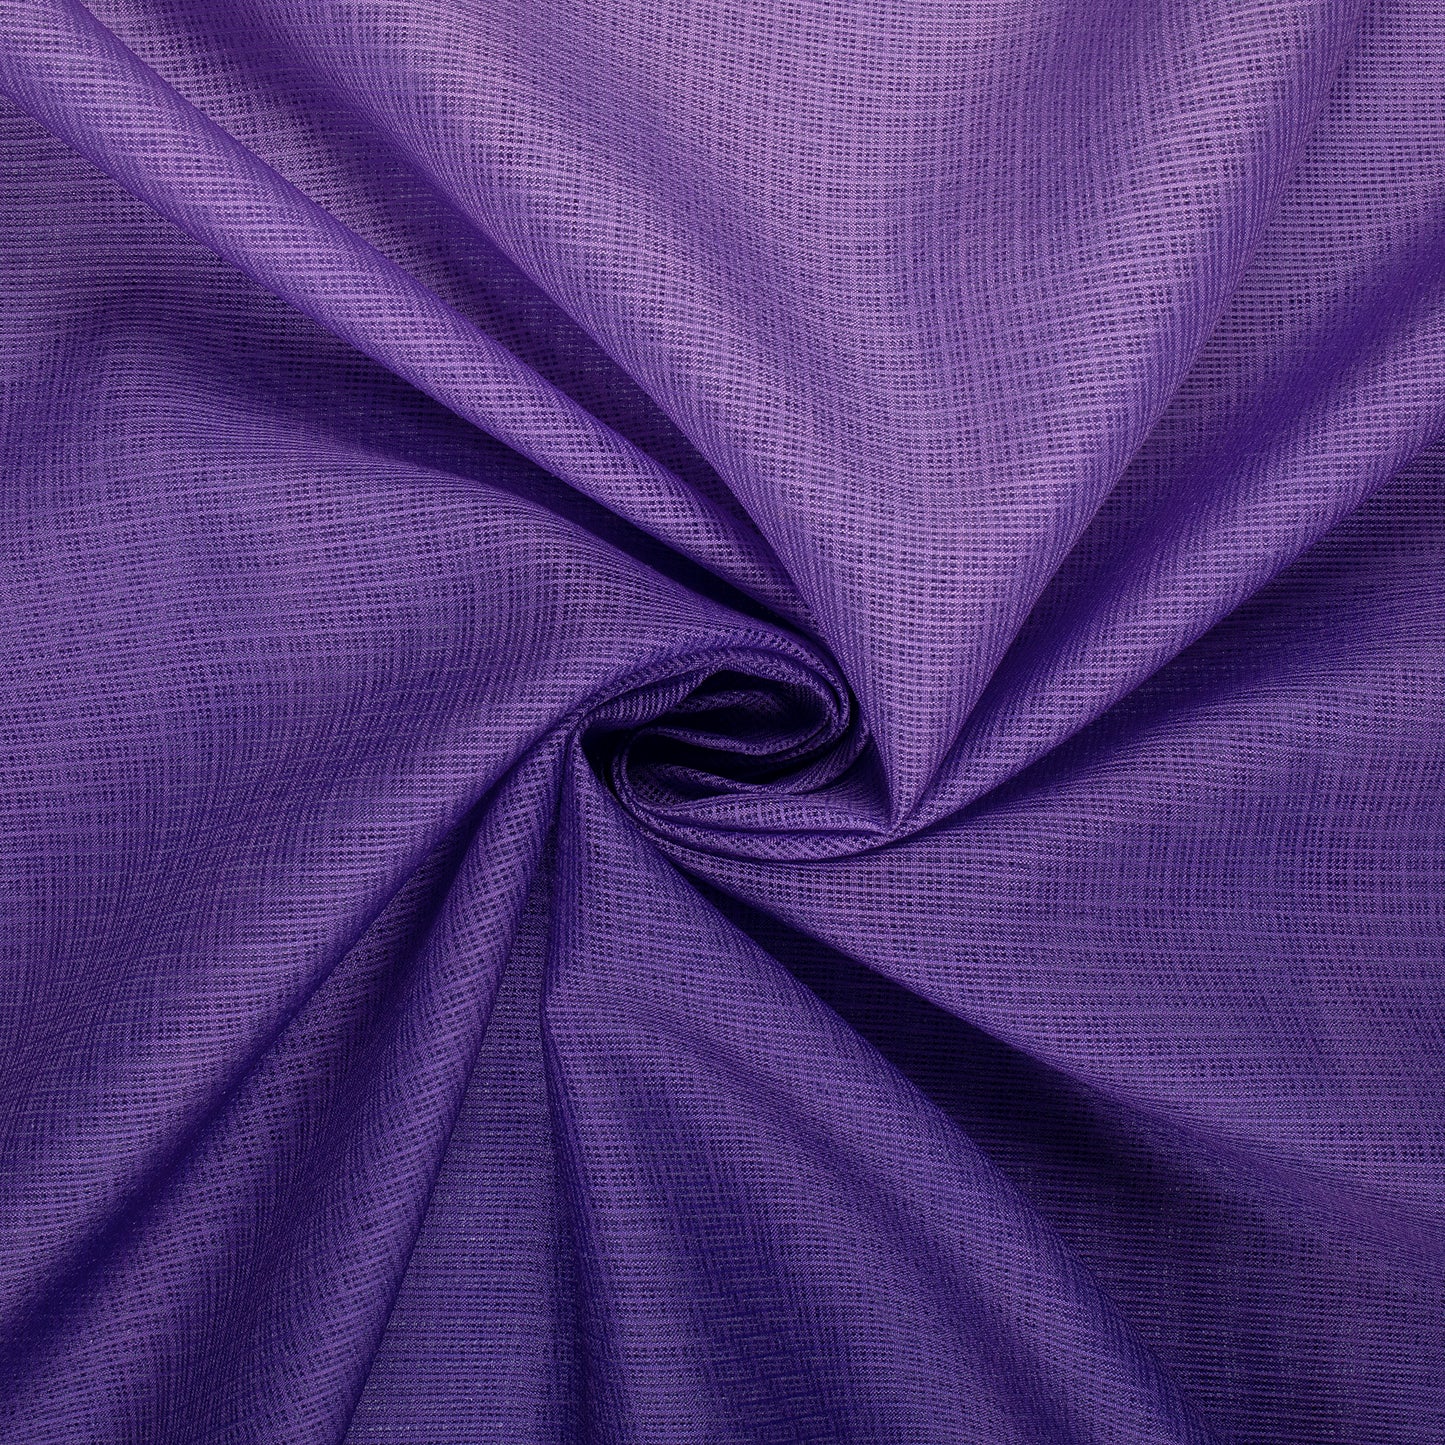 Deep Violet Purple Ombre Digital Print Kota Doria Fabric